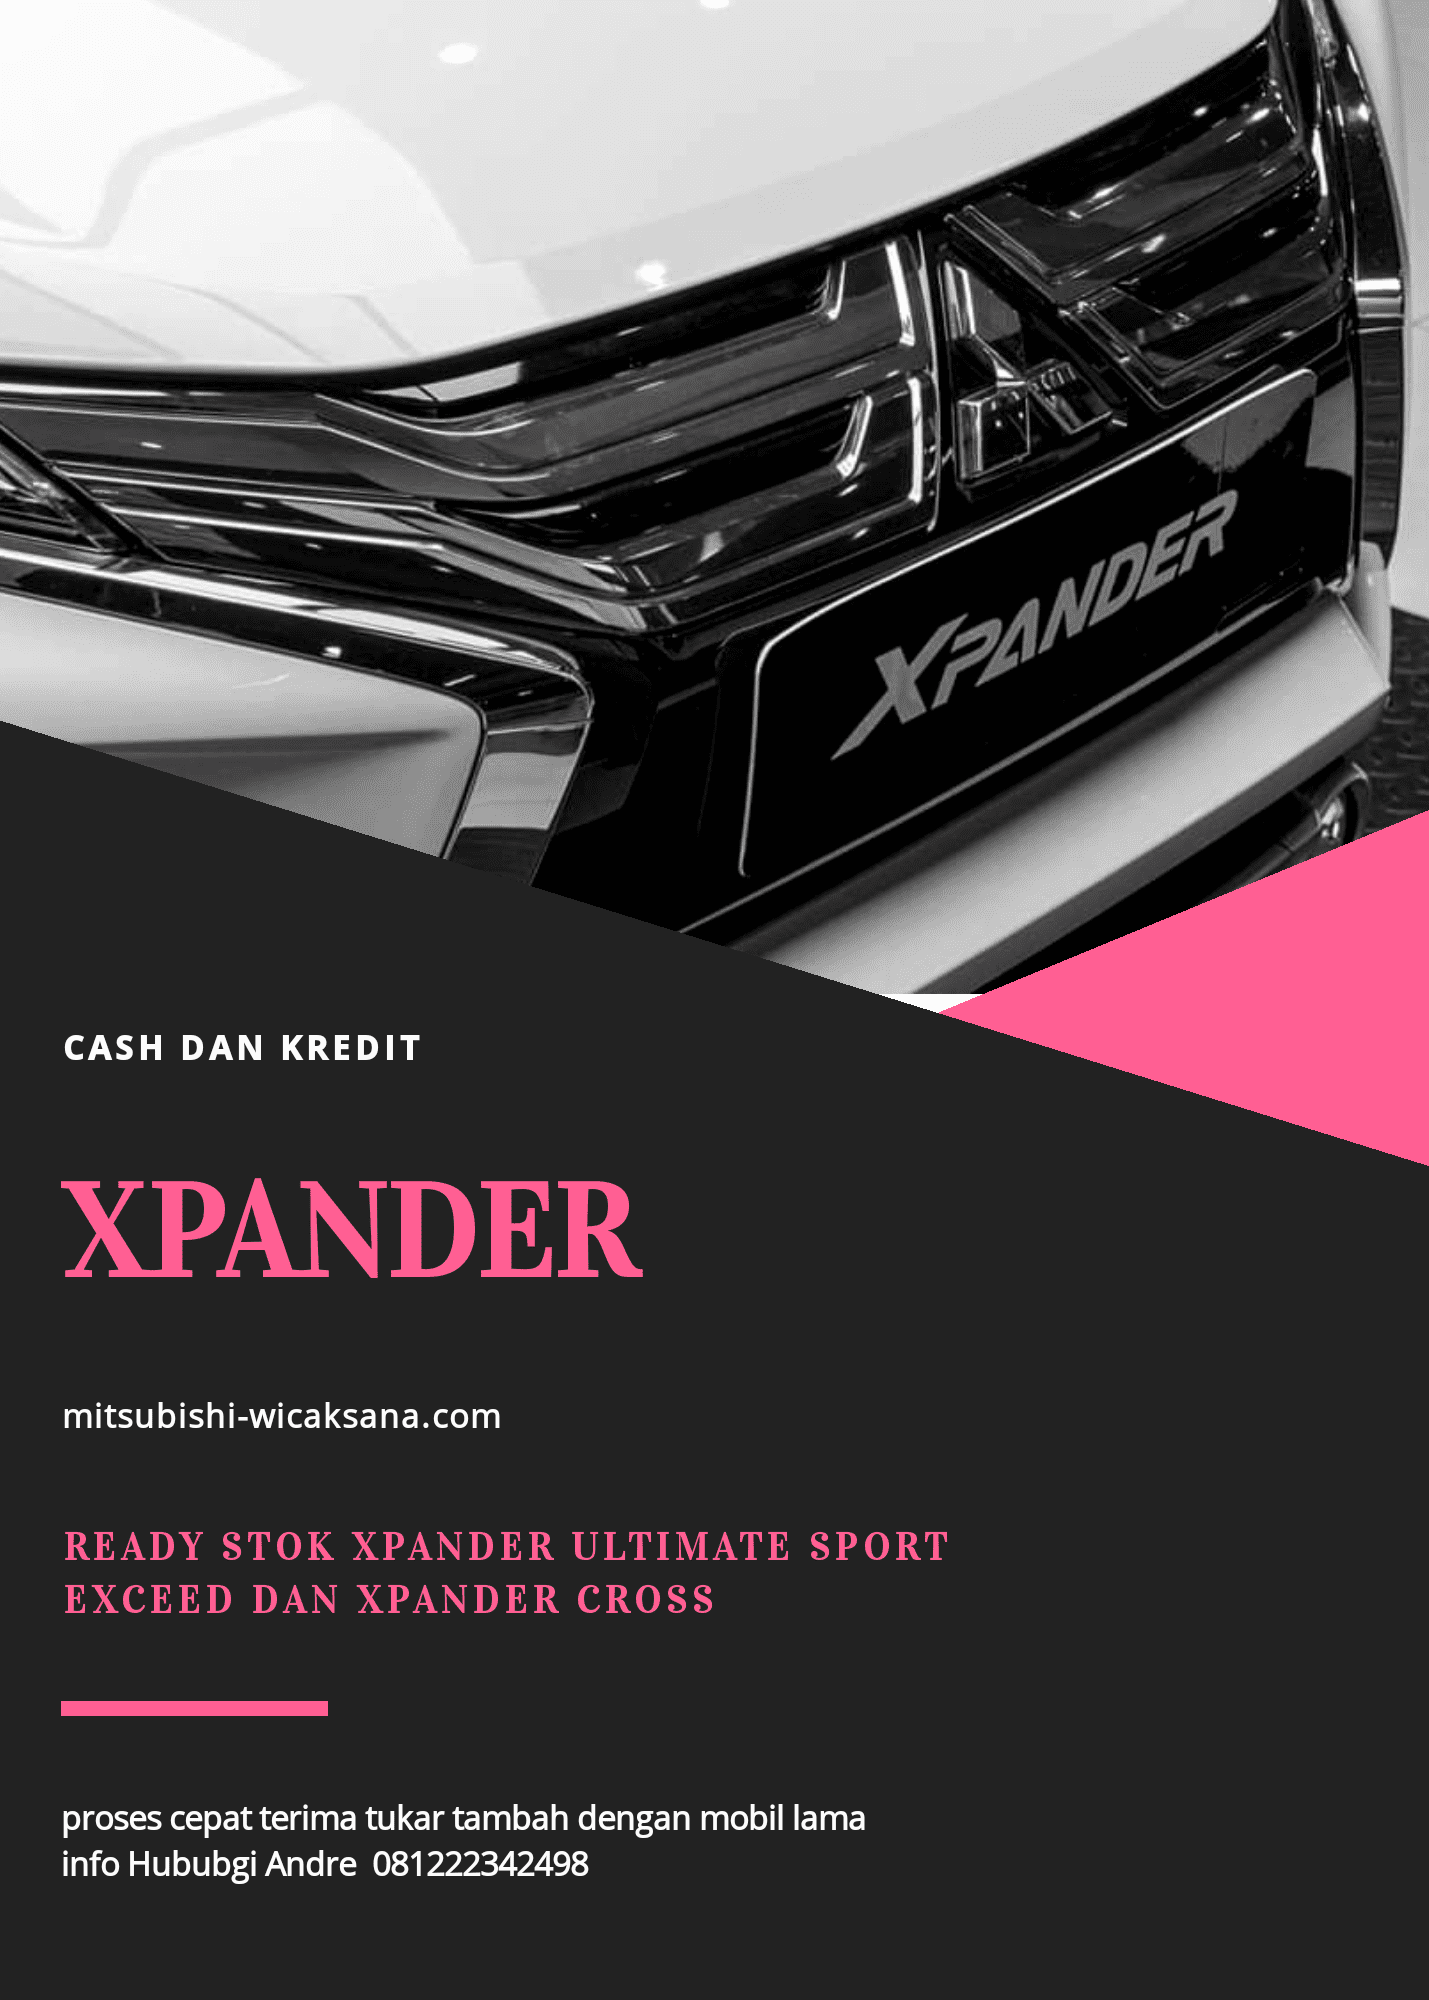 Xpander ultimate